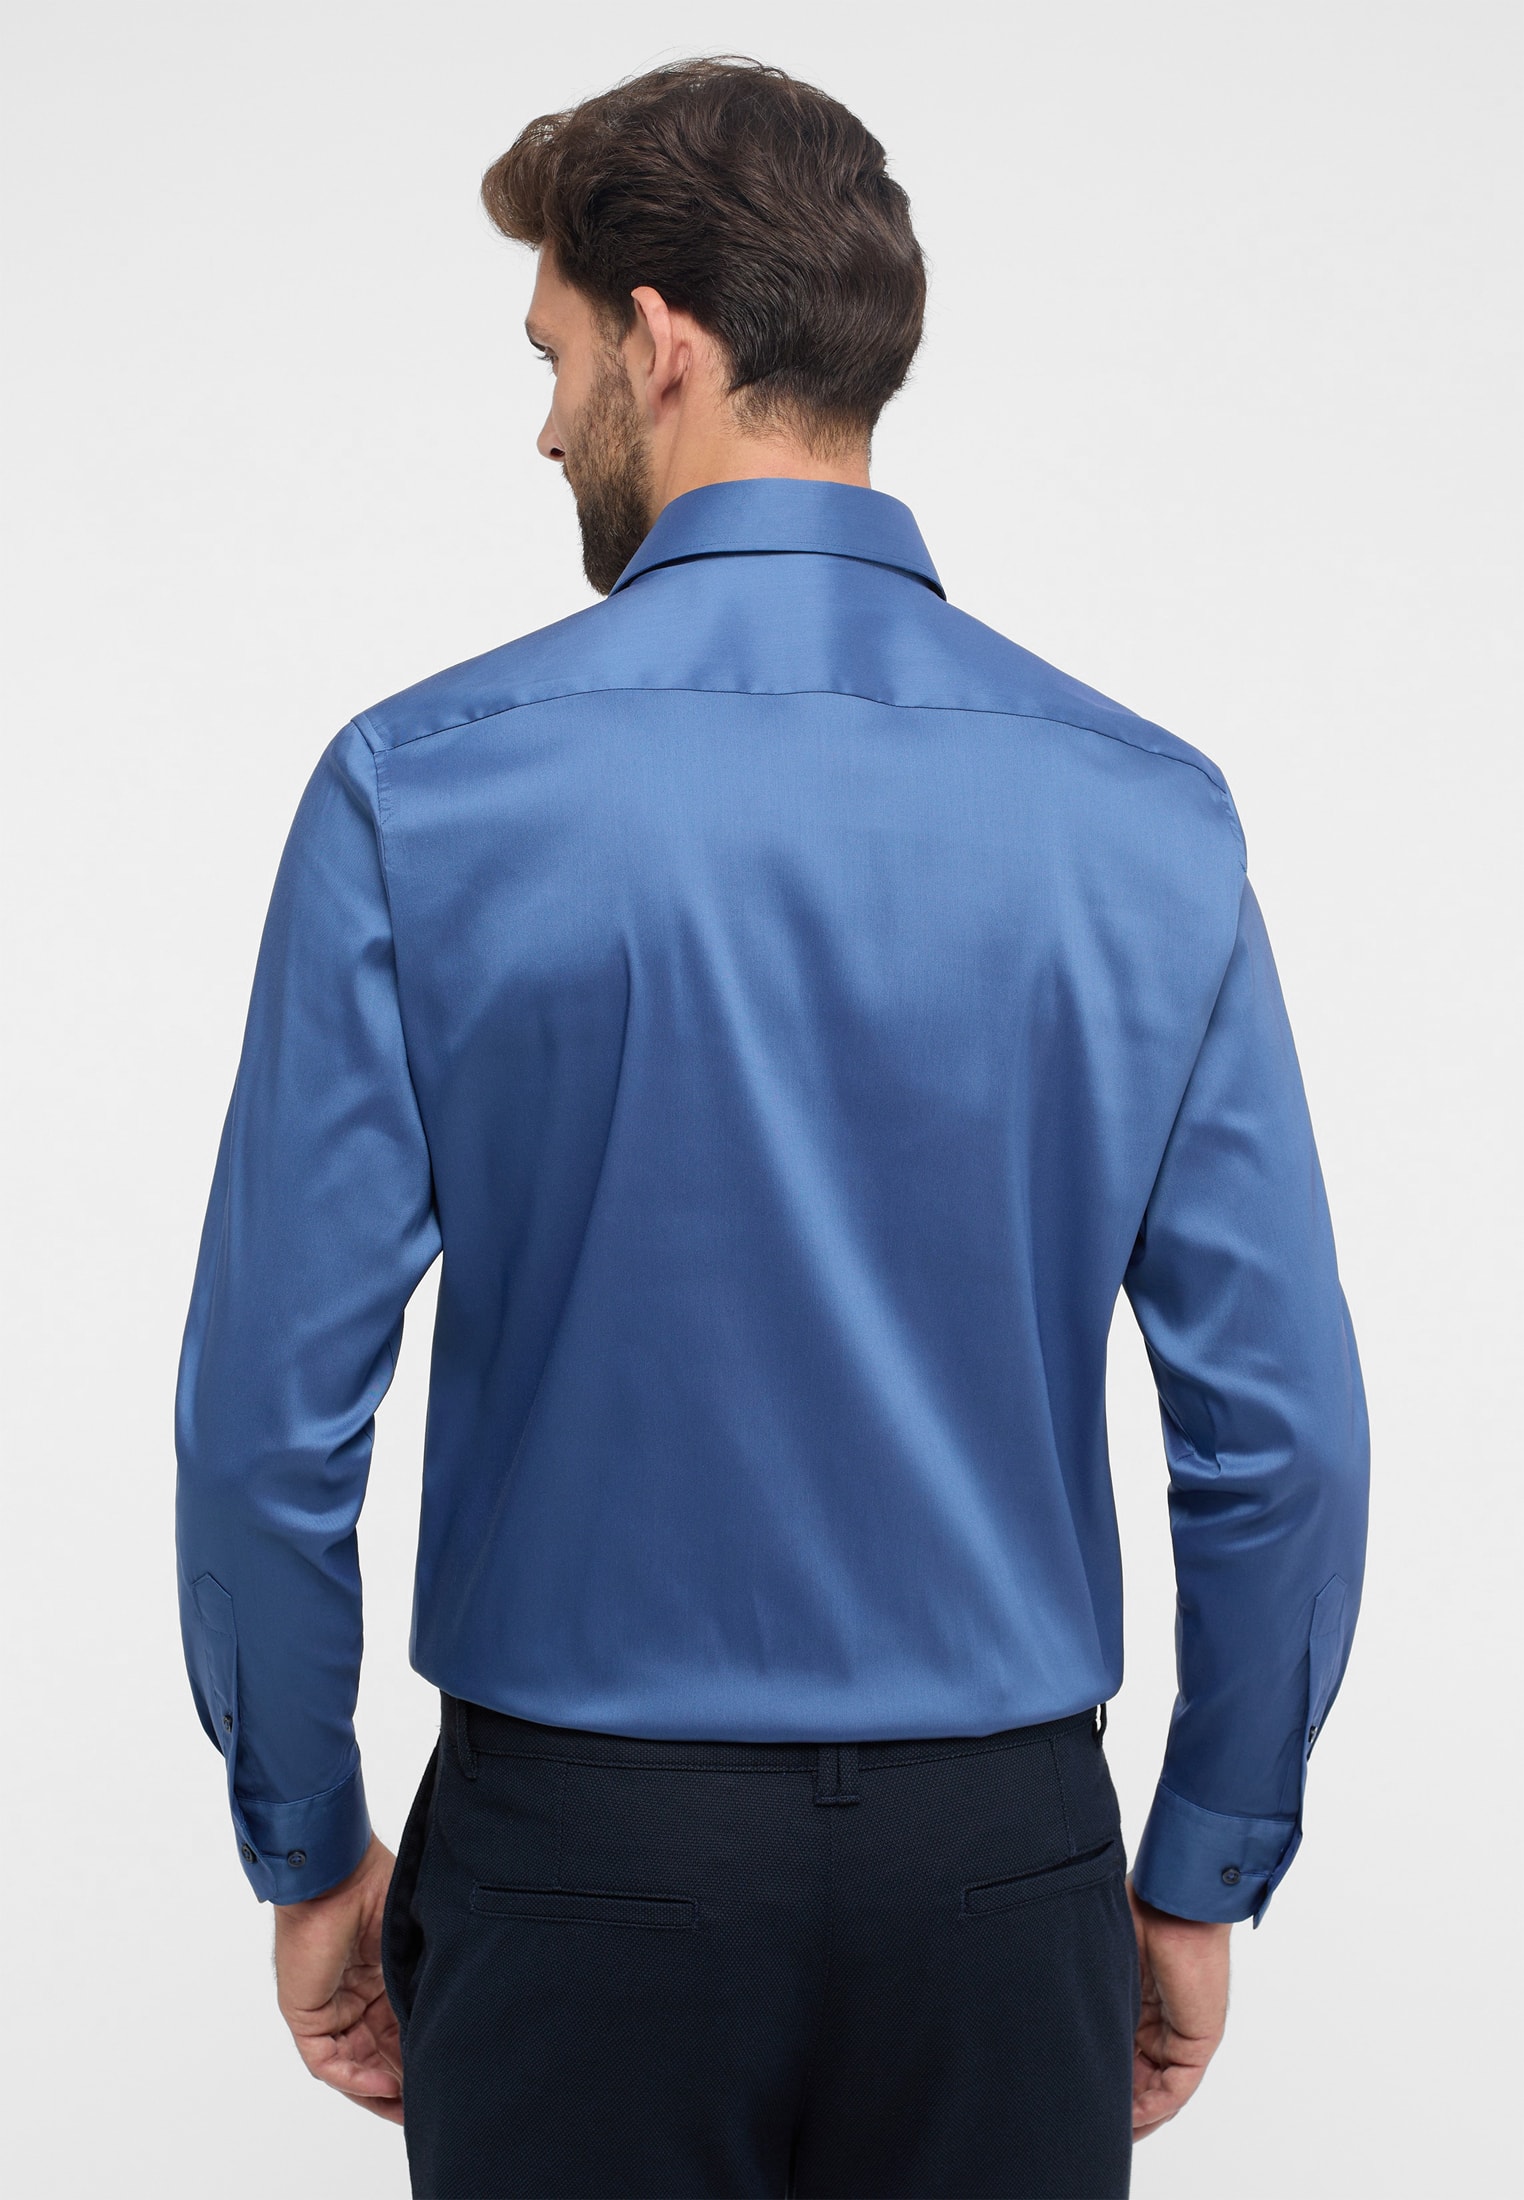 MODERN FIT Performance Shirt in rauchblau unifarben | rauchblau | 44 |  Langarm | 1SH02224-01-62-44-1/1